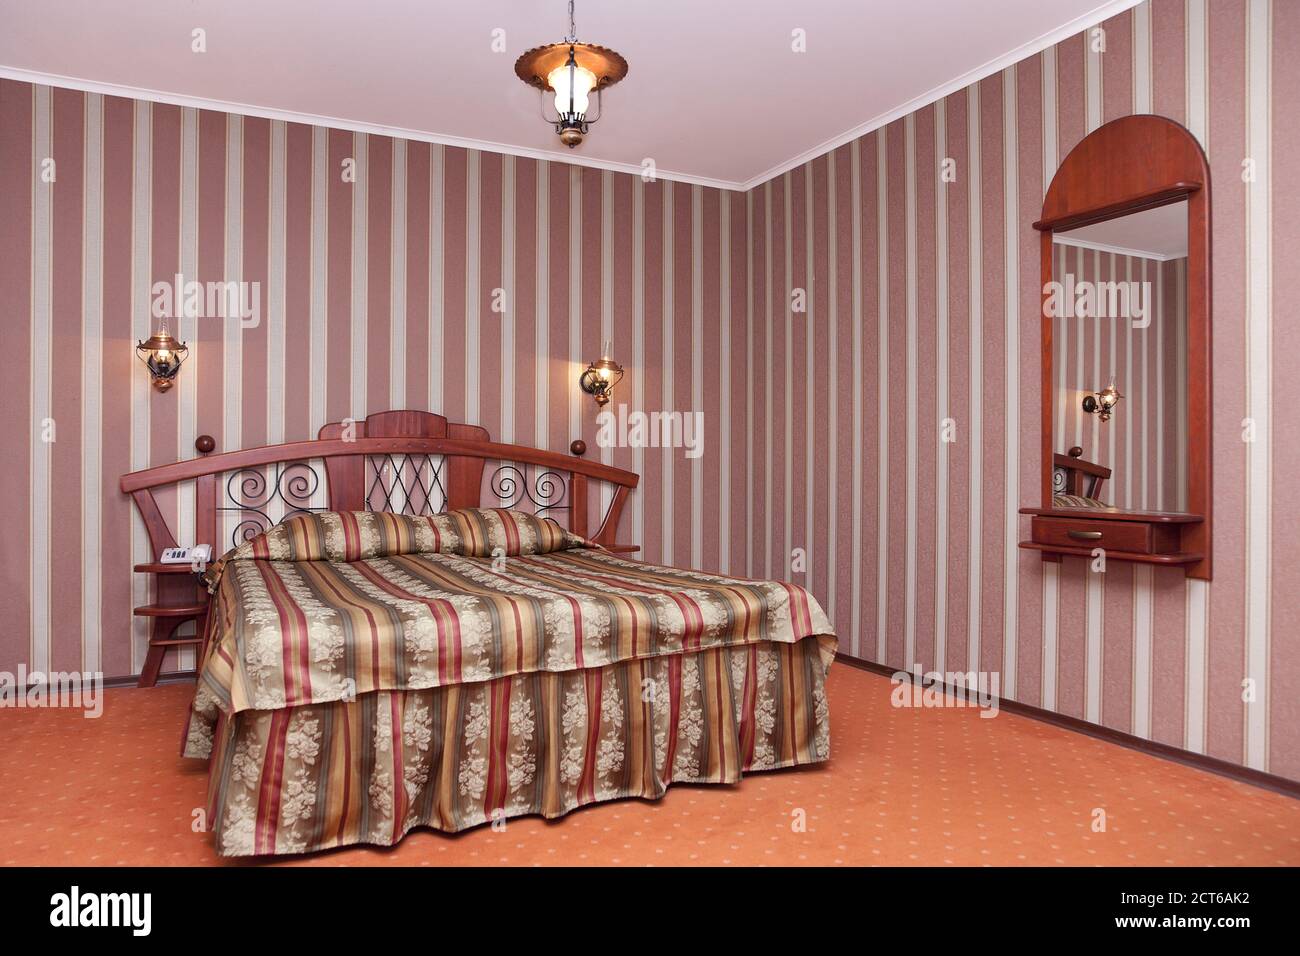 Ein Hotel mit altmodischen Zimmern im Retro-Stil, einem Schlafzimmer mit karierter Bettwäsche, gestreifter Tapete und Spiegel. Stockfoto